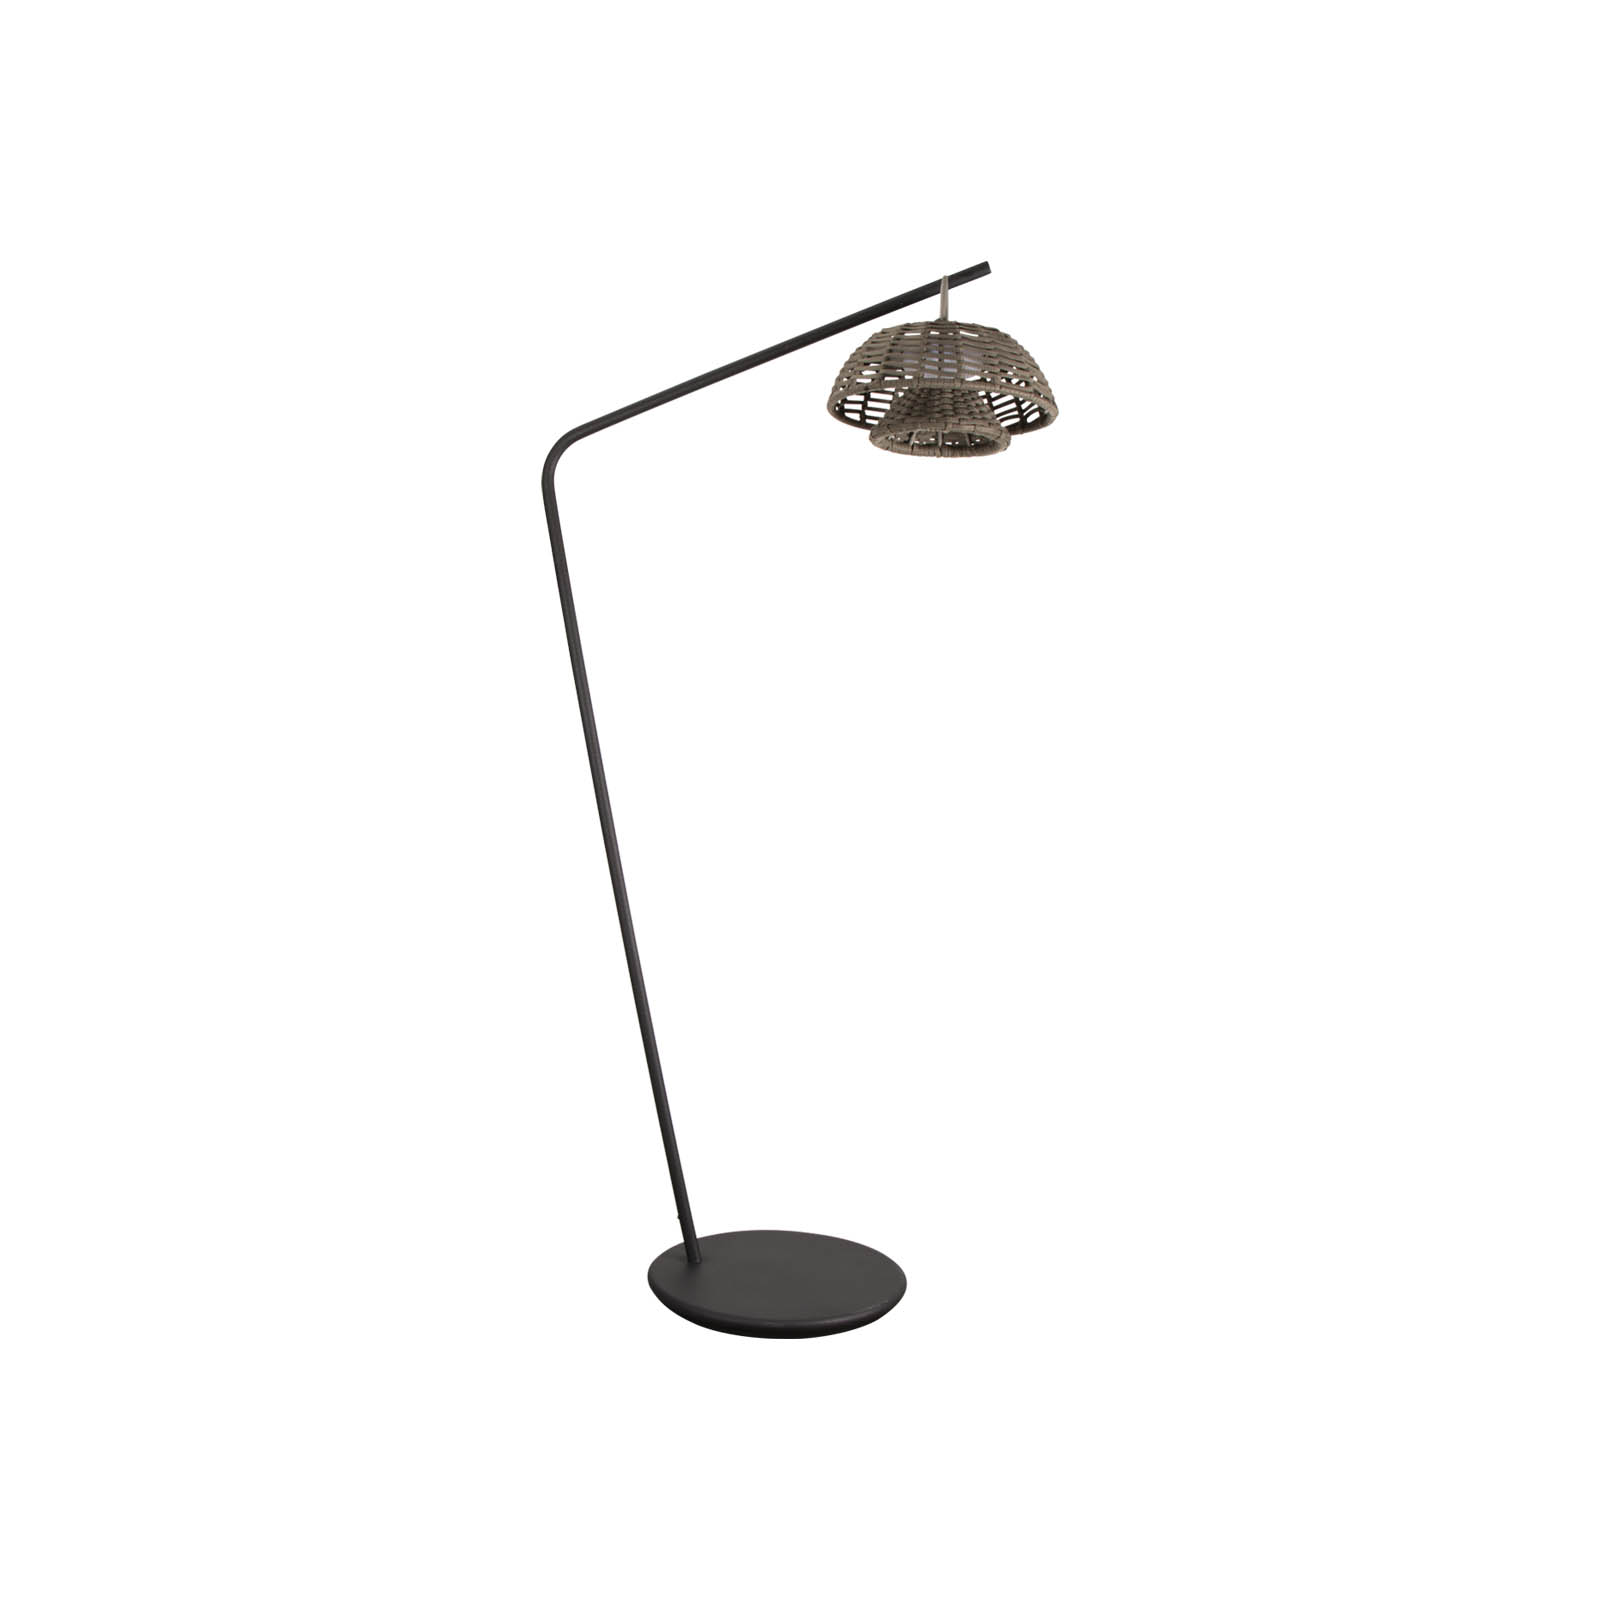 Illusion Lampe f oder Aufhängung / Illusion Ständer aus Aluminium in Lava Grey mit  aus Cane-line Soft Rope in Taupe und  aus  in